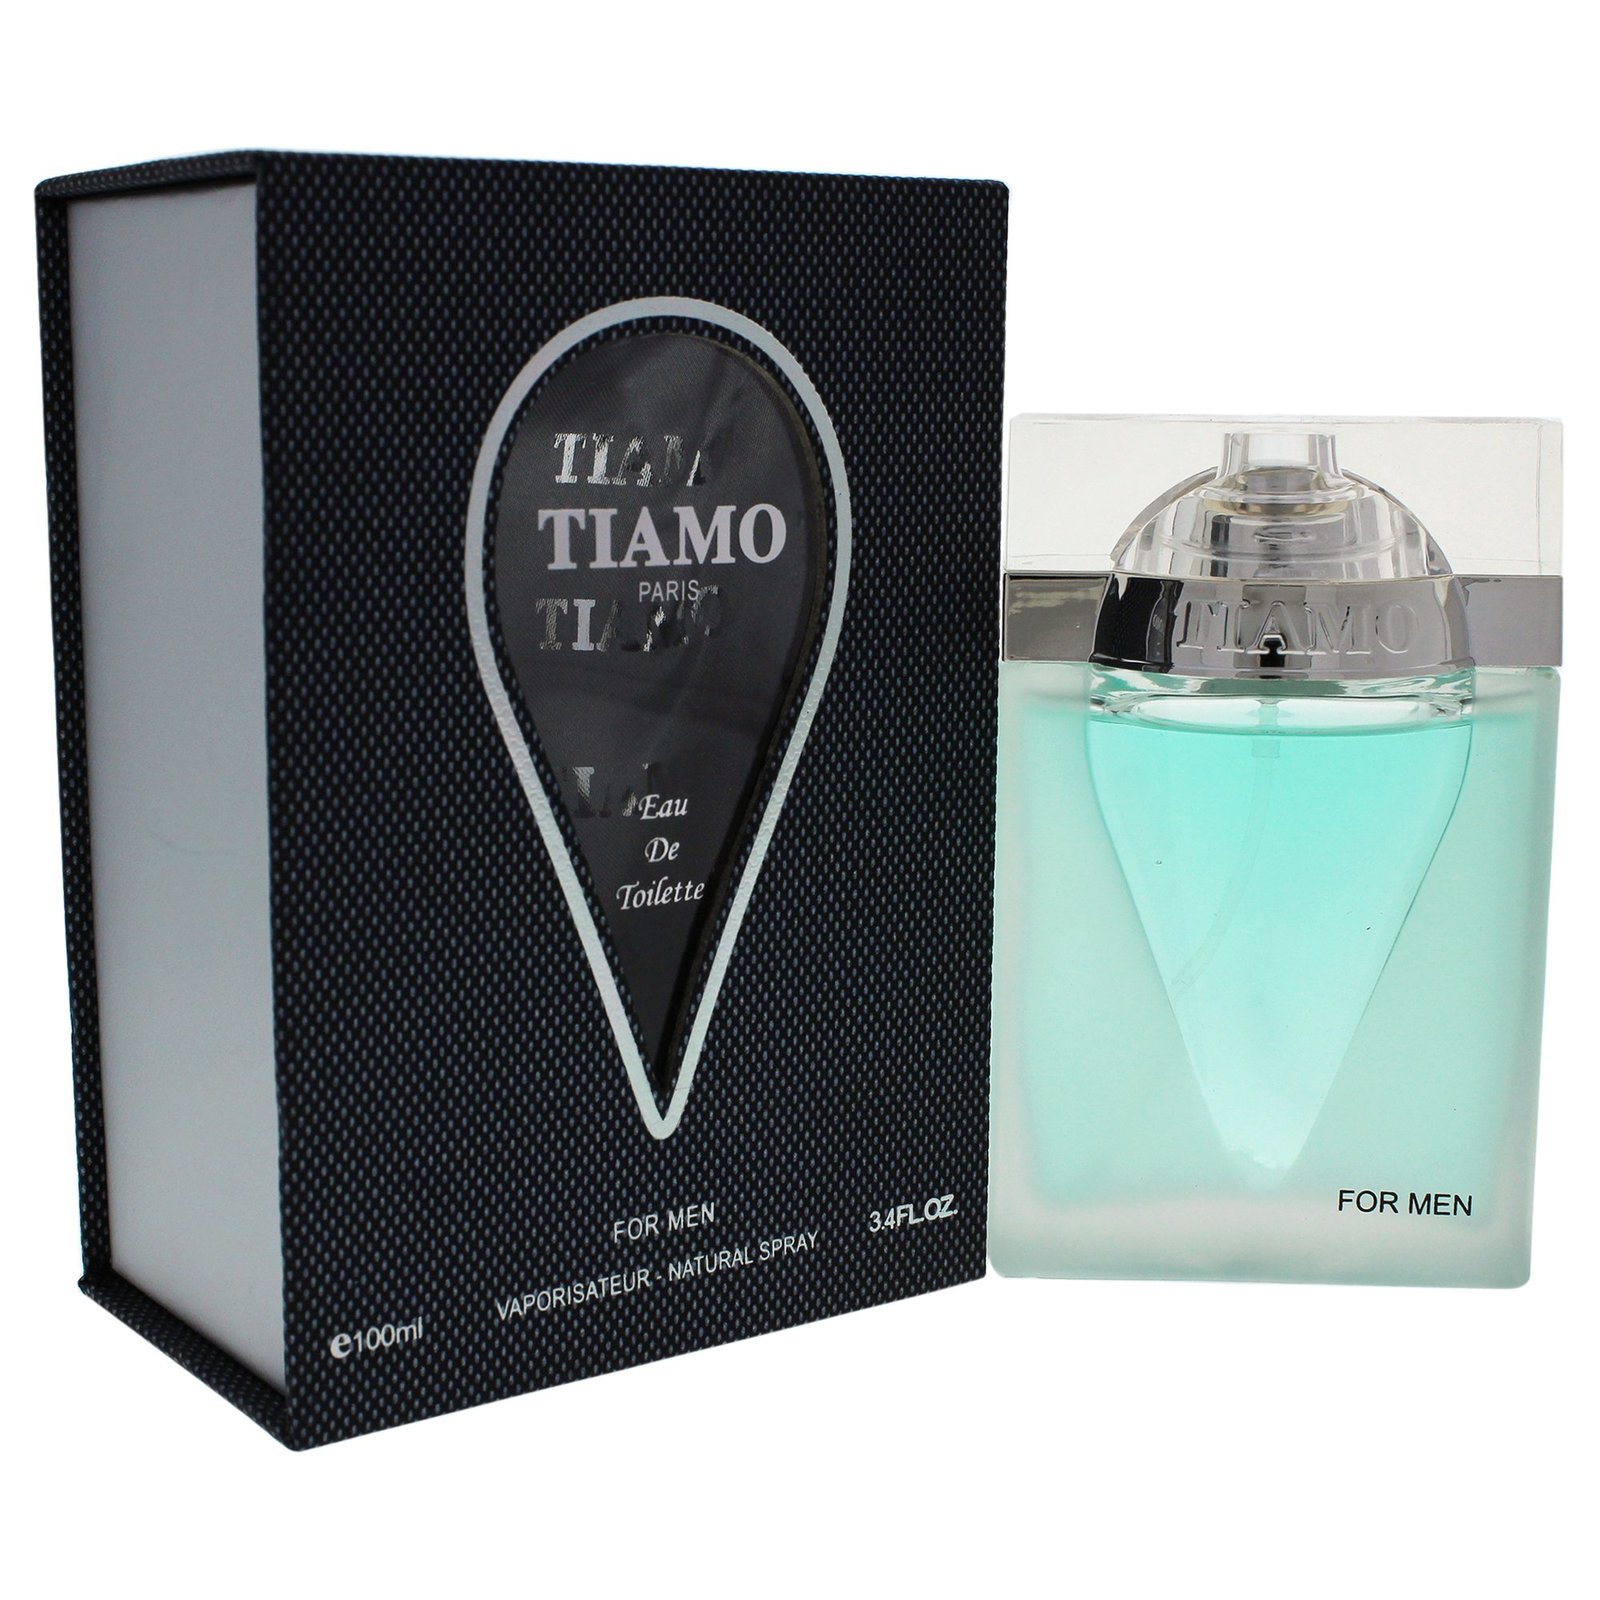 Parfum Blaze Parfum Blaze Tiamo by parfum blaze for men - 3.4 Ounce edt spray, 3